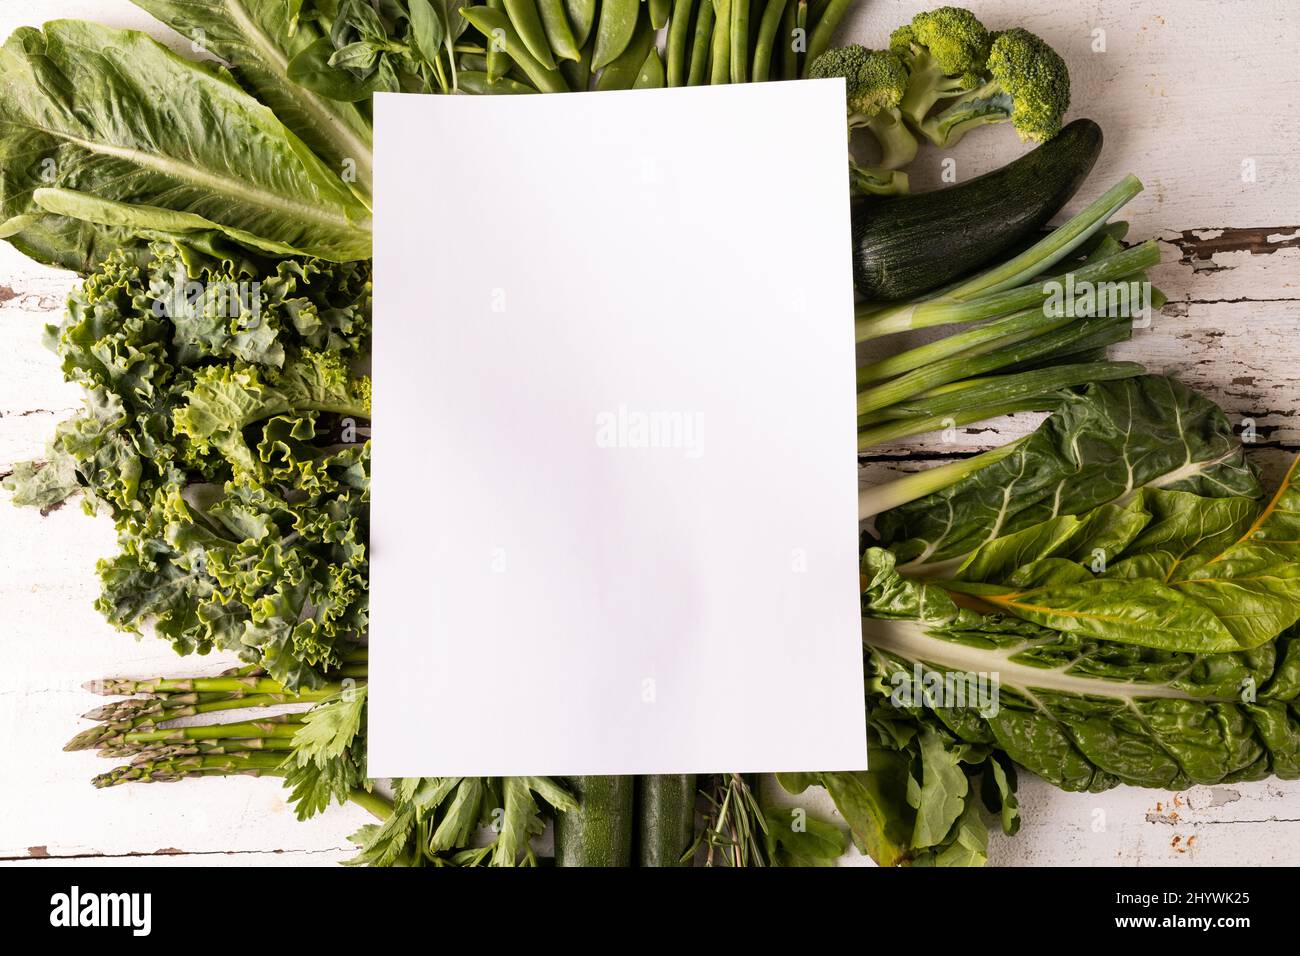 Vista dall'alto di verdure fresche verdi su un tavolo bianco con spazio per la copia Foto Stock